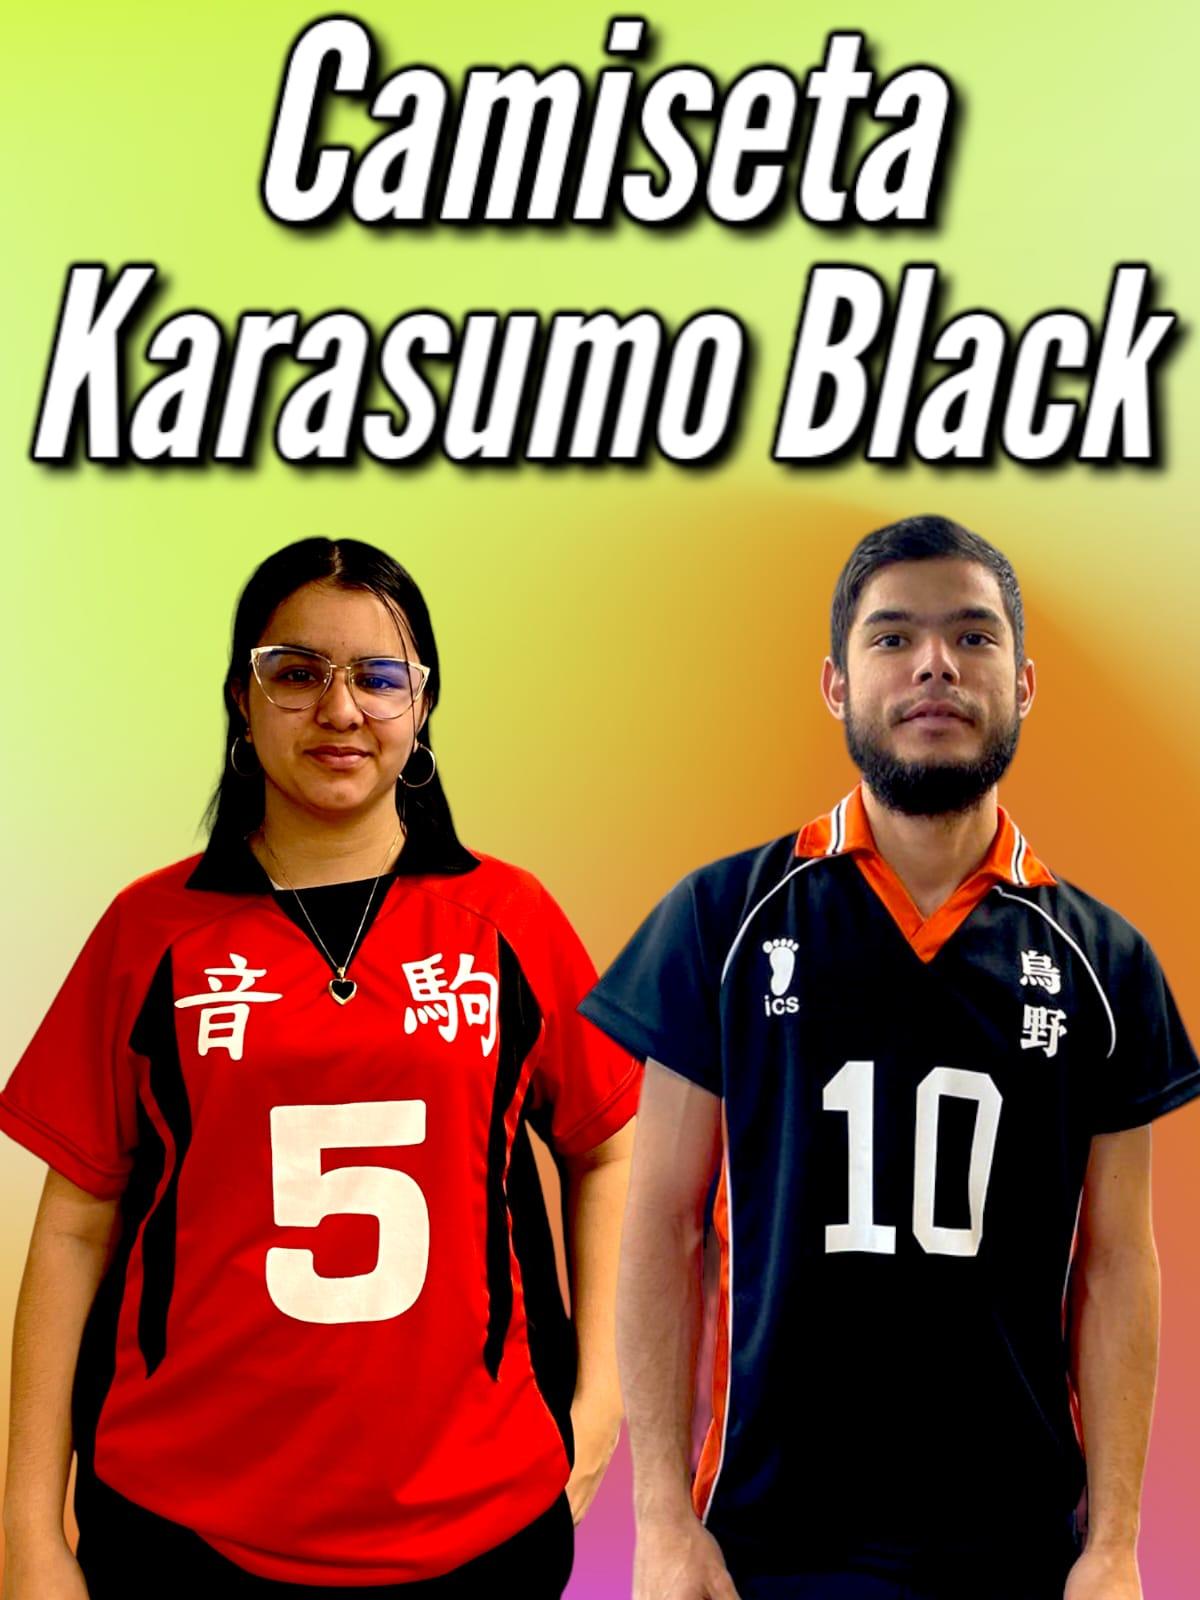 Camiseta Karasuno Black Haikyuu